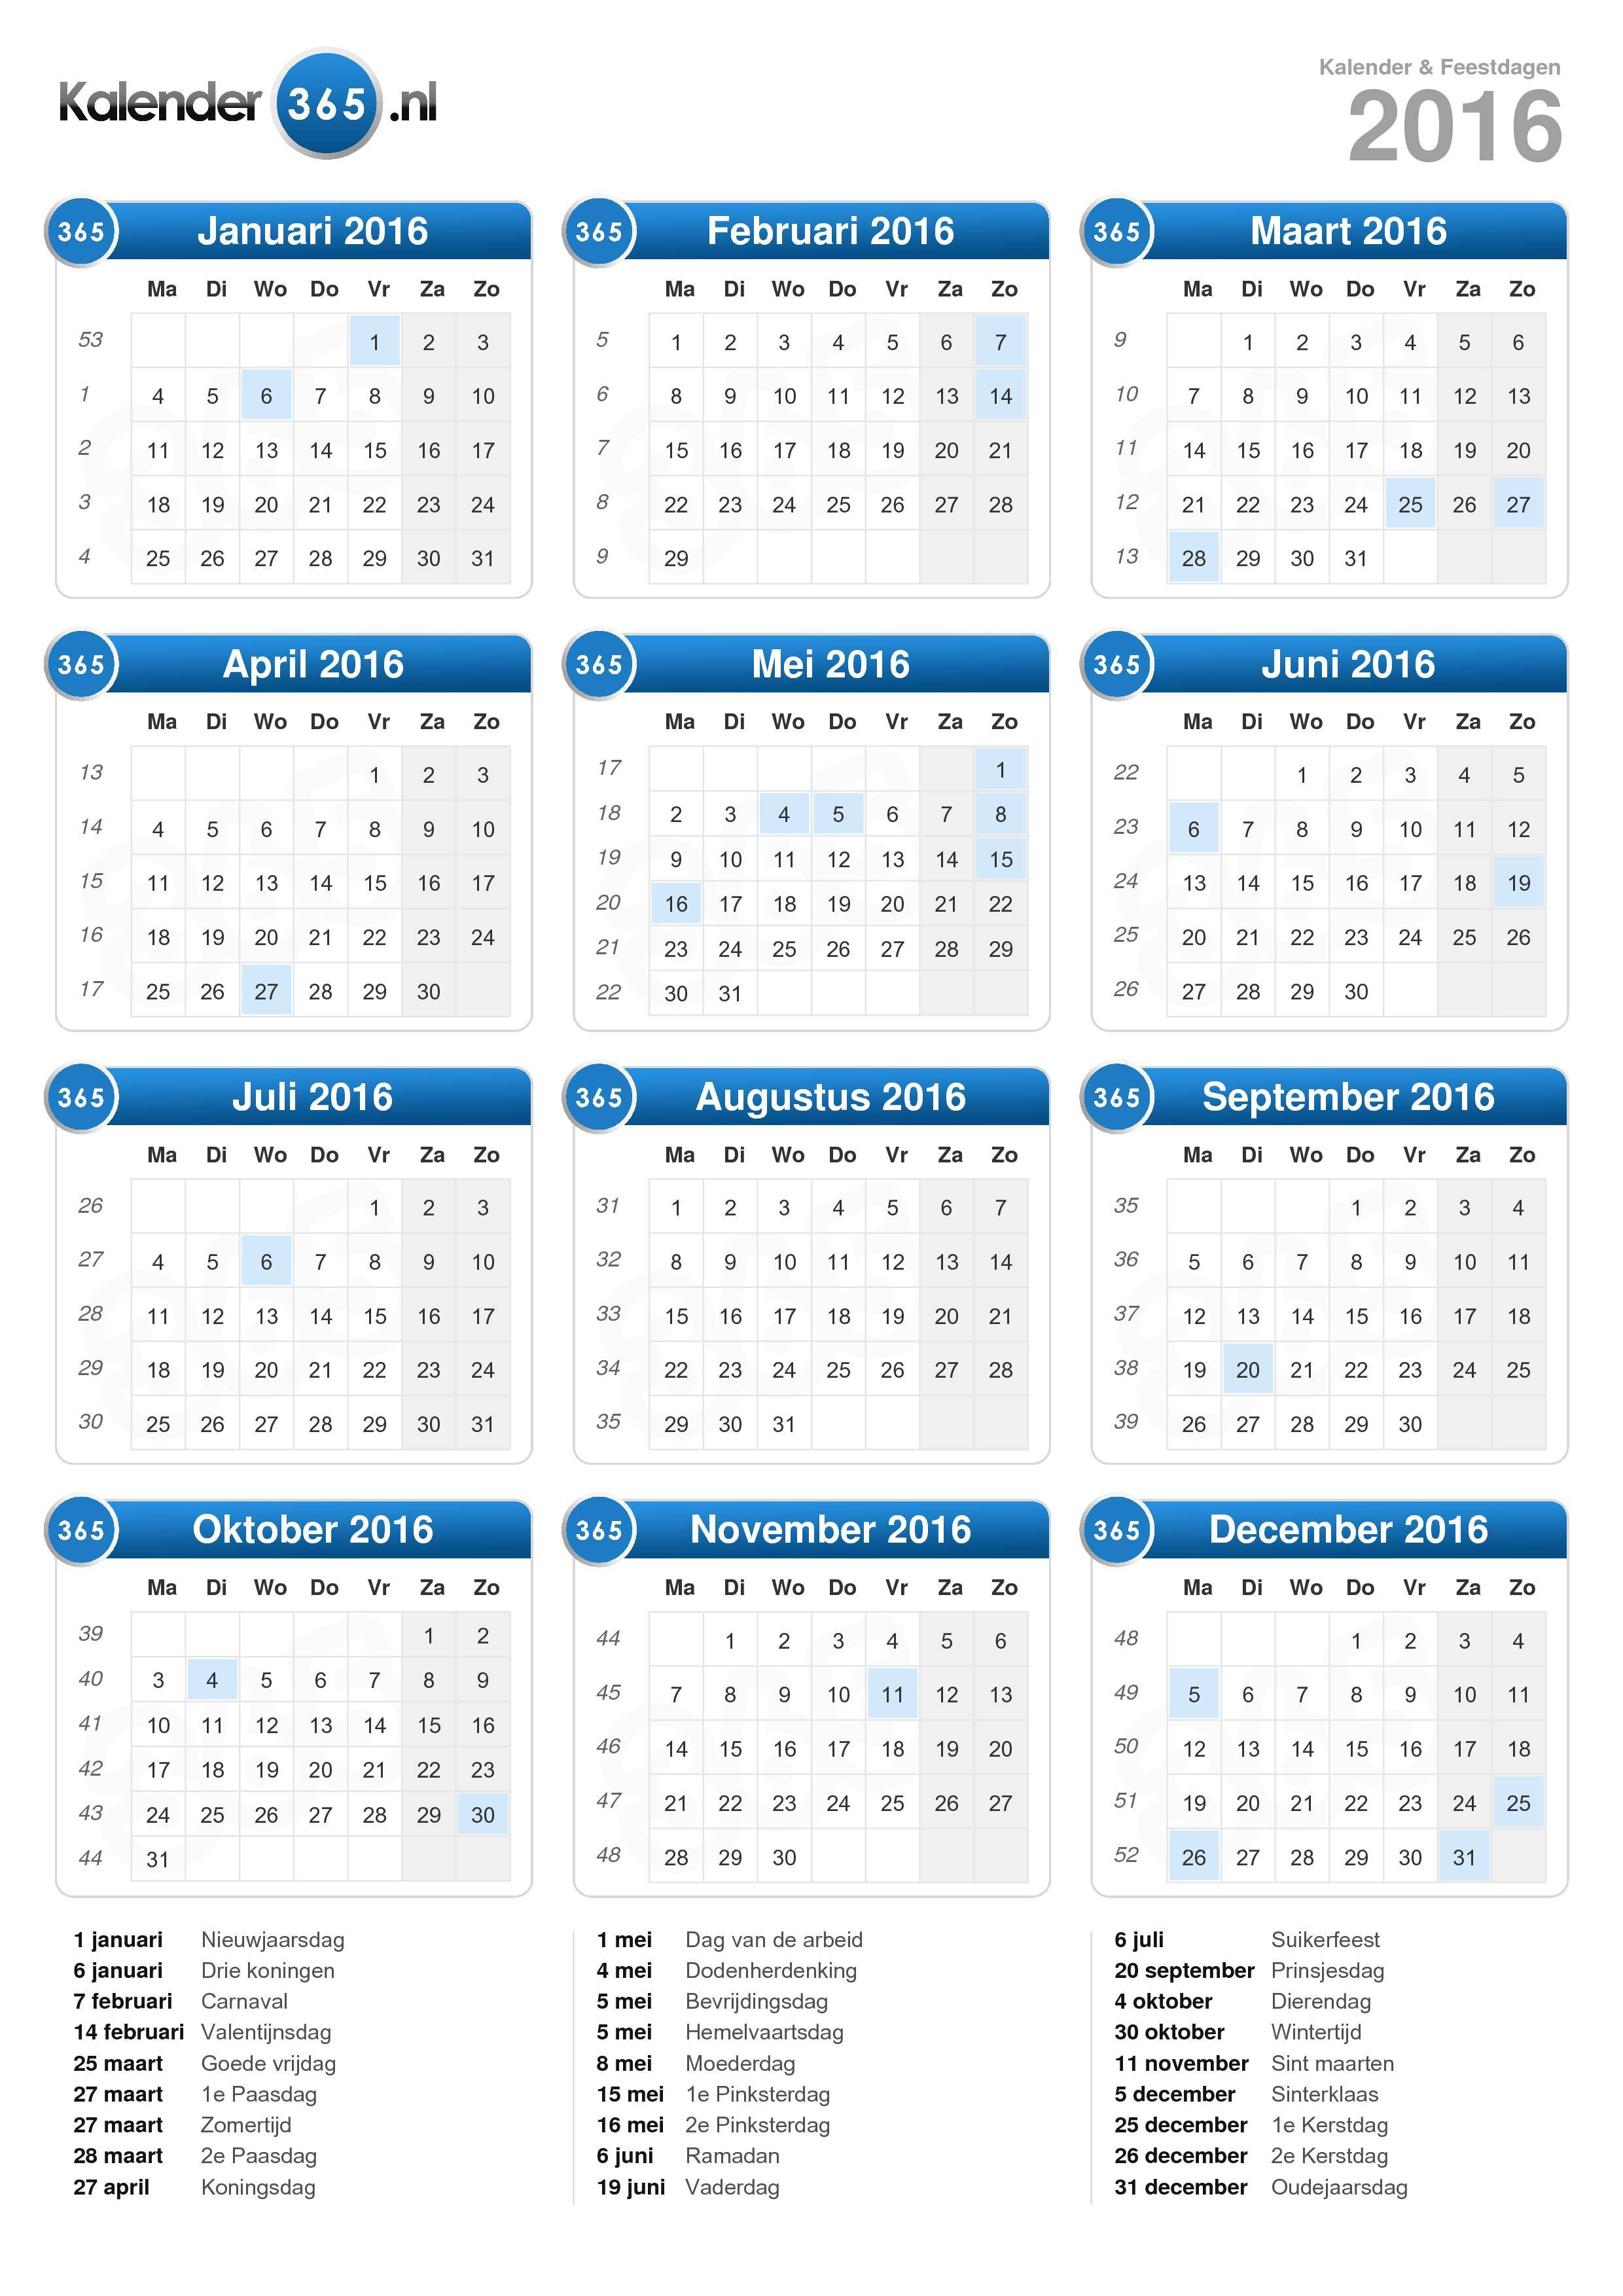 Ambtenaren ten tweede spoelen Kalender 2016